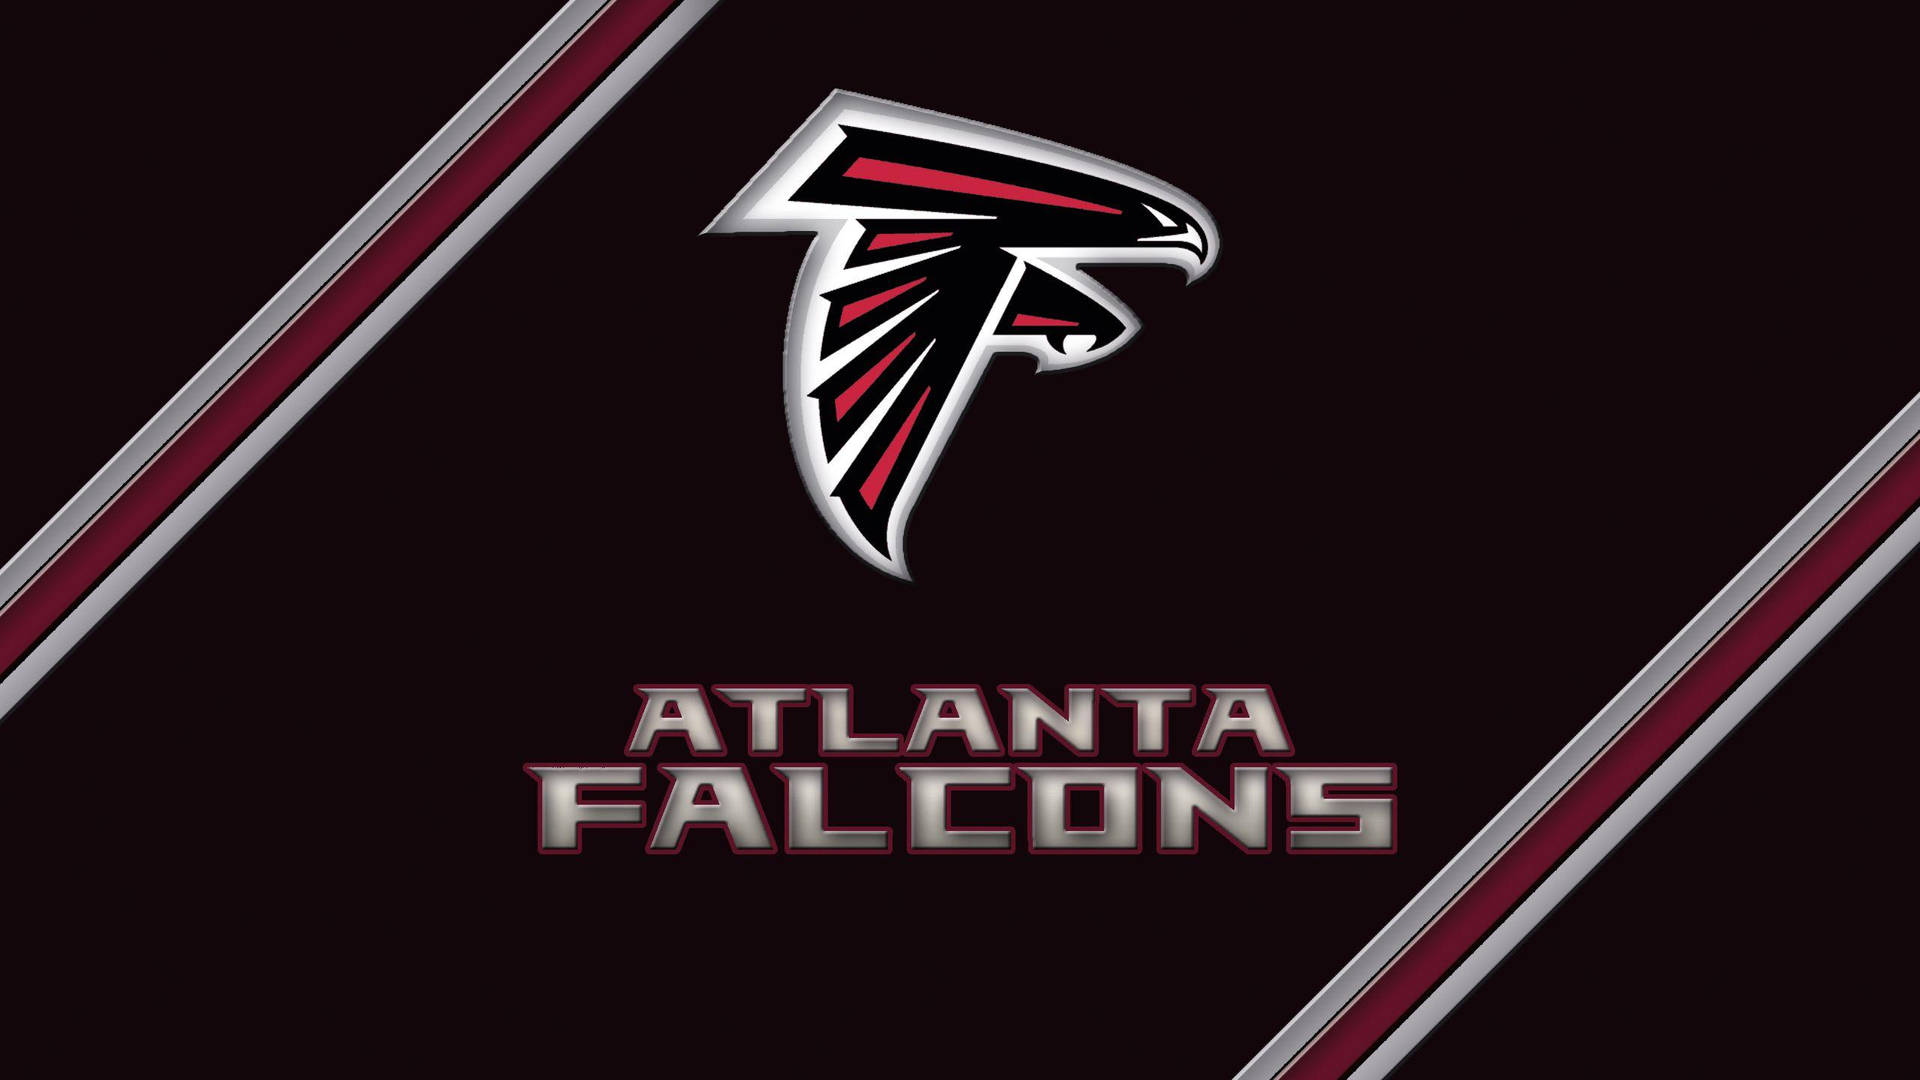 Imágenes De Atlanta Falcons